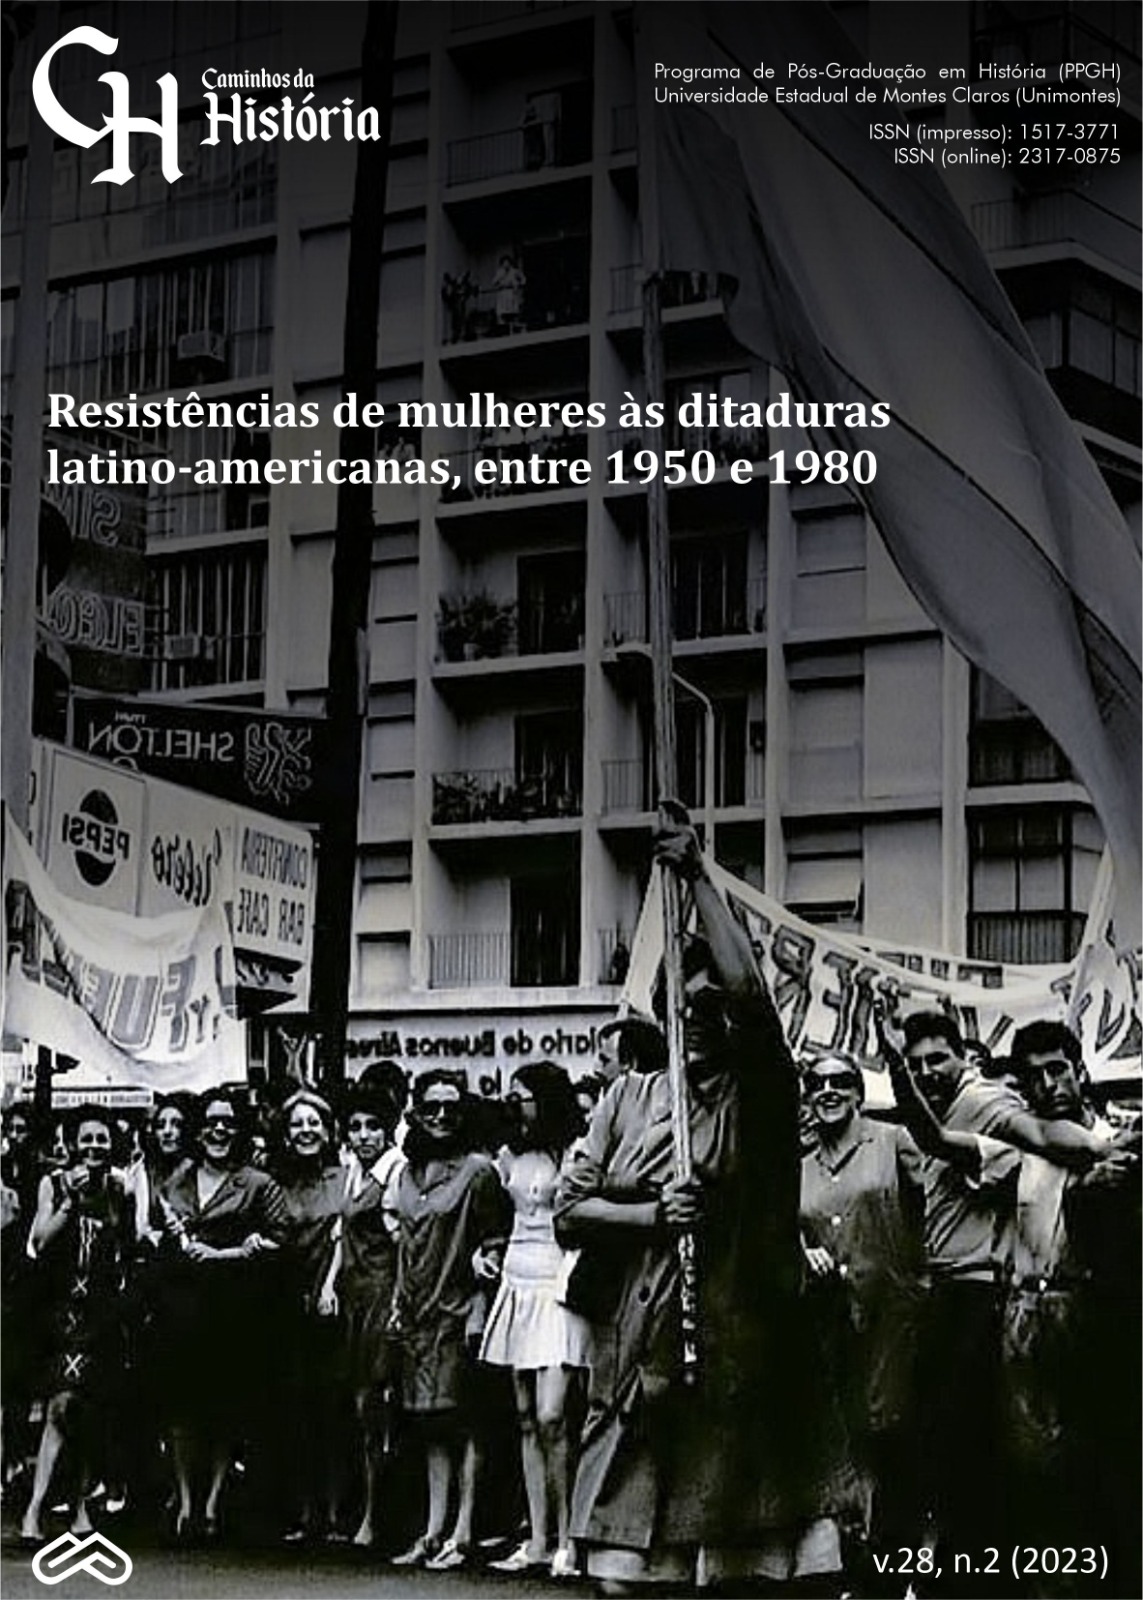 					Visualizar v. 28 n. 2 (2023): Resistências de mulheres às ditaduras latino-americanas entre 1950 e 1980
				